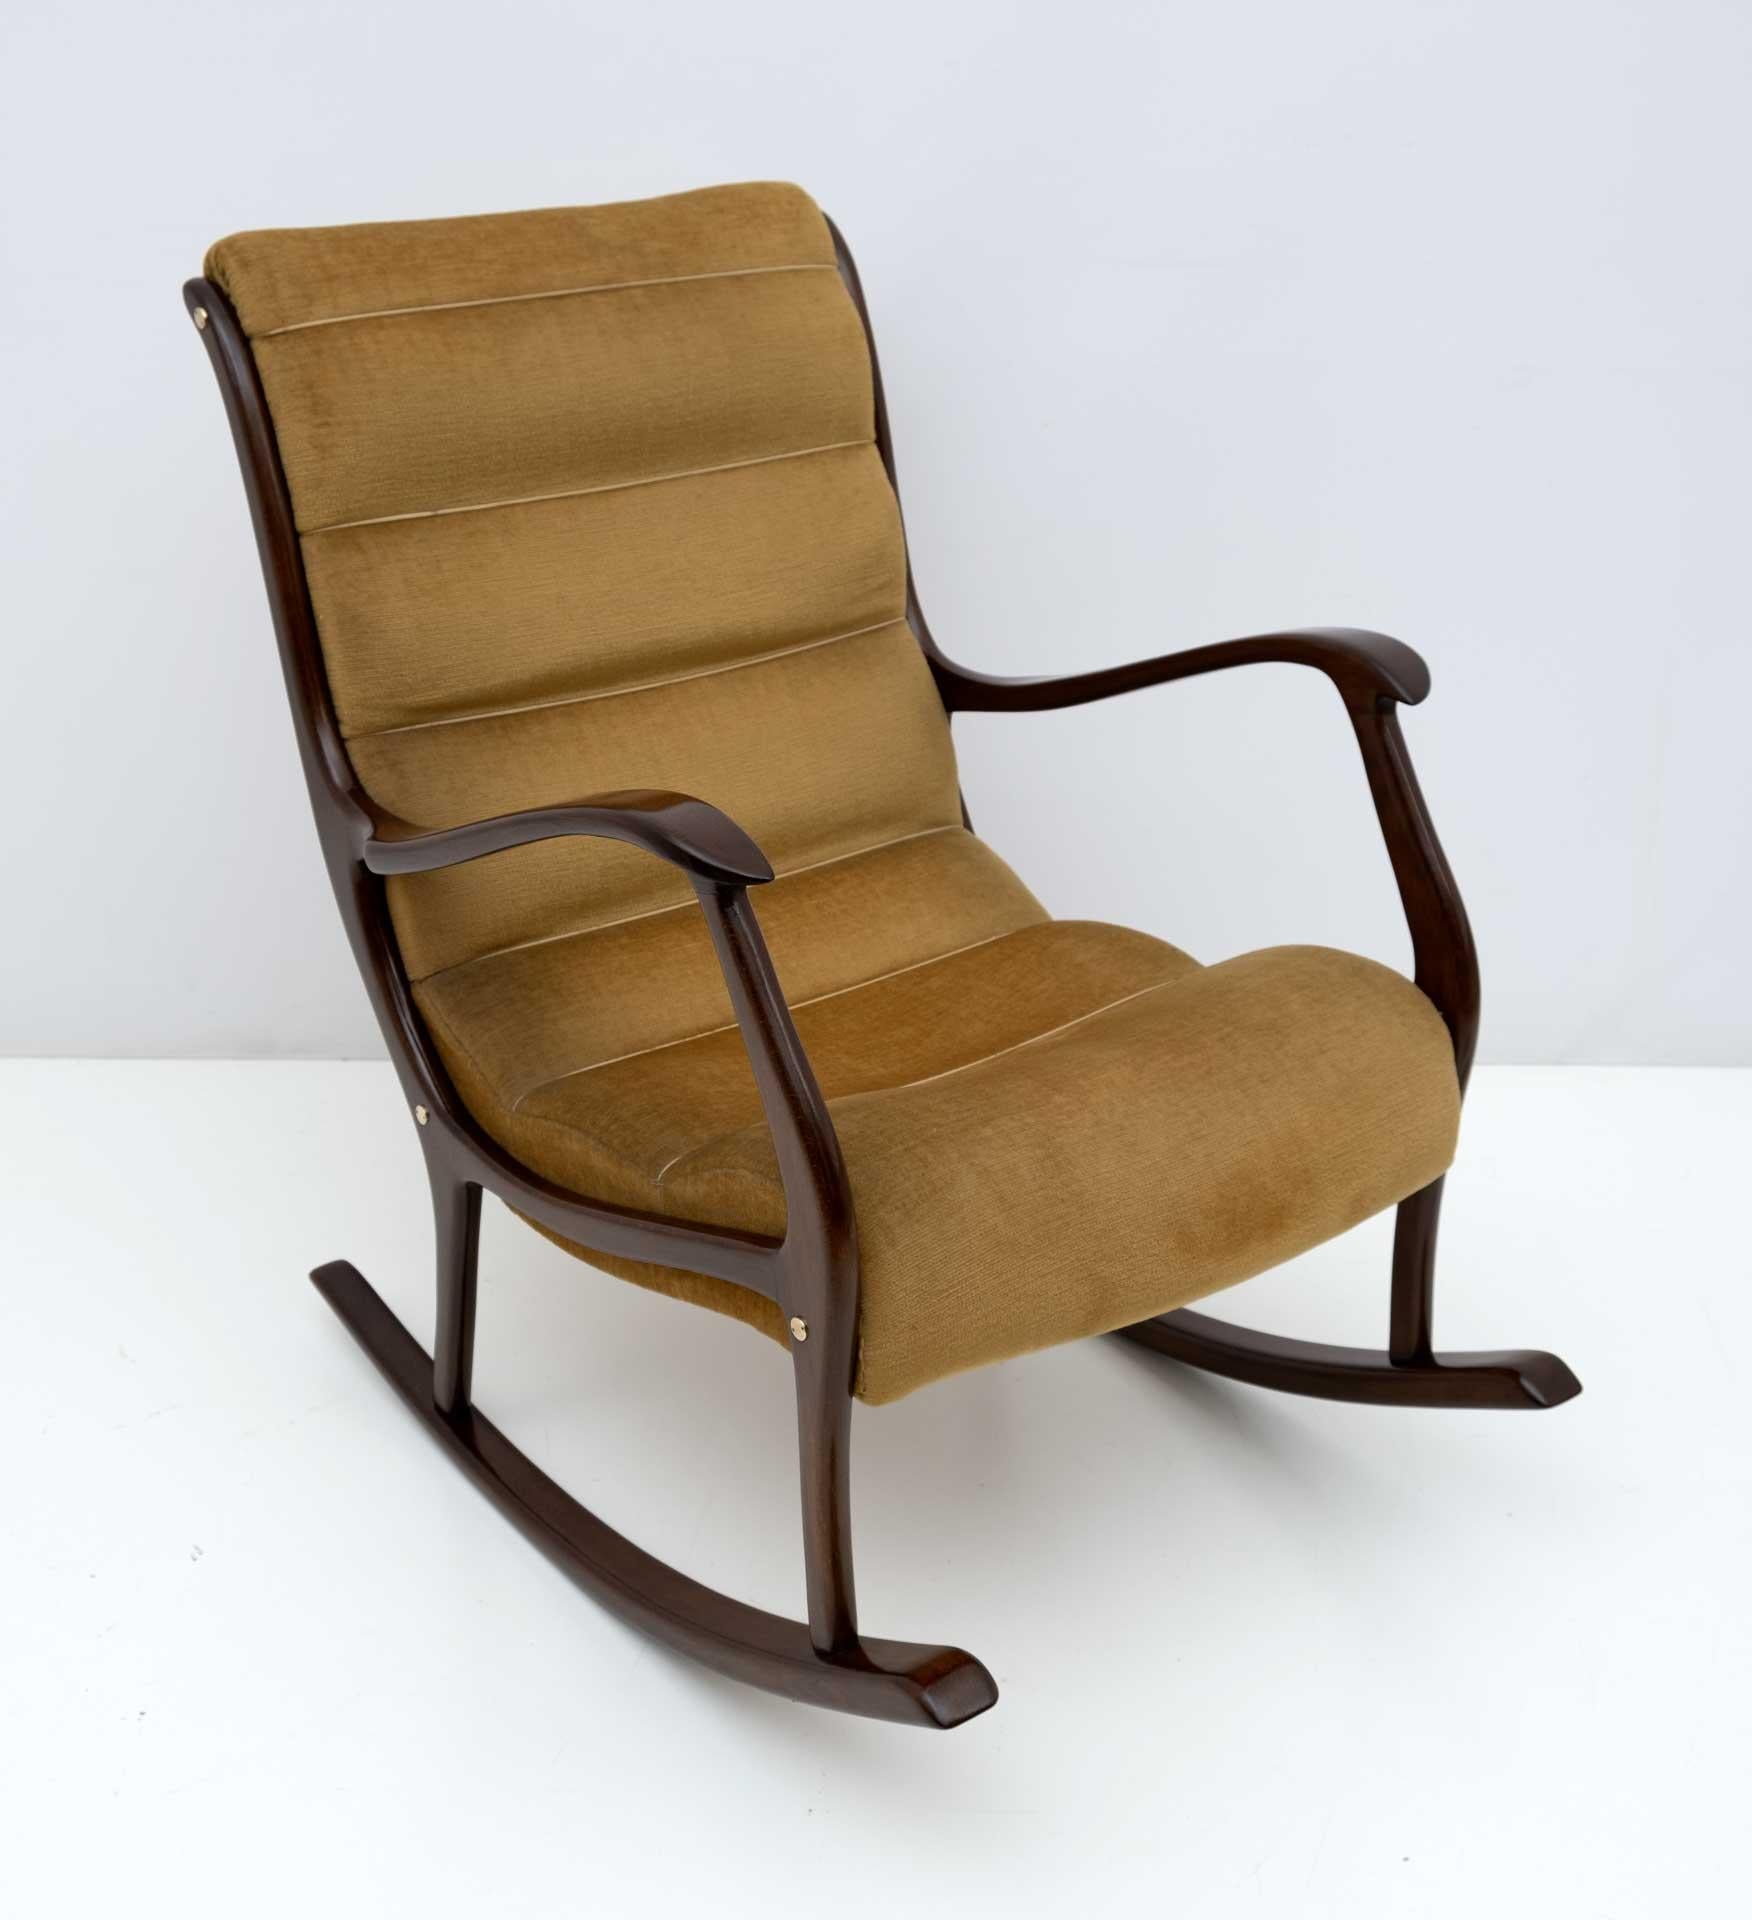 Rare et original fauteuil à bascule mod. Mitzi design by Ezio Longhi for Elam from the 1950s. Nous n'avons restauré que la partie en bois, elle a besoin d'un nouveau rembourrage.
Il s'agit d'une chaise de collection.